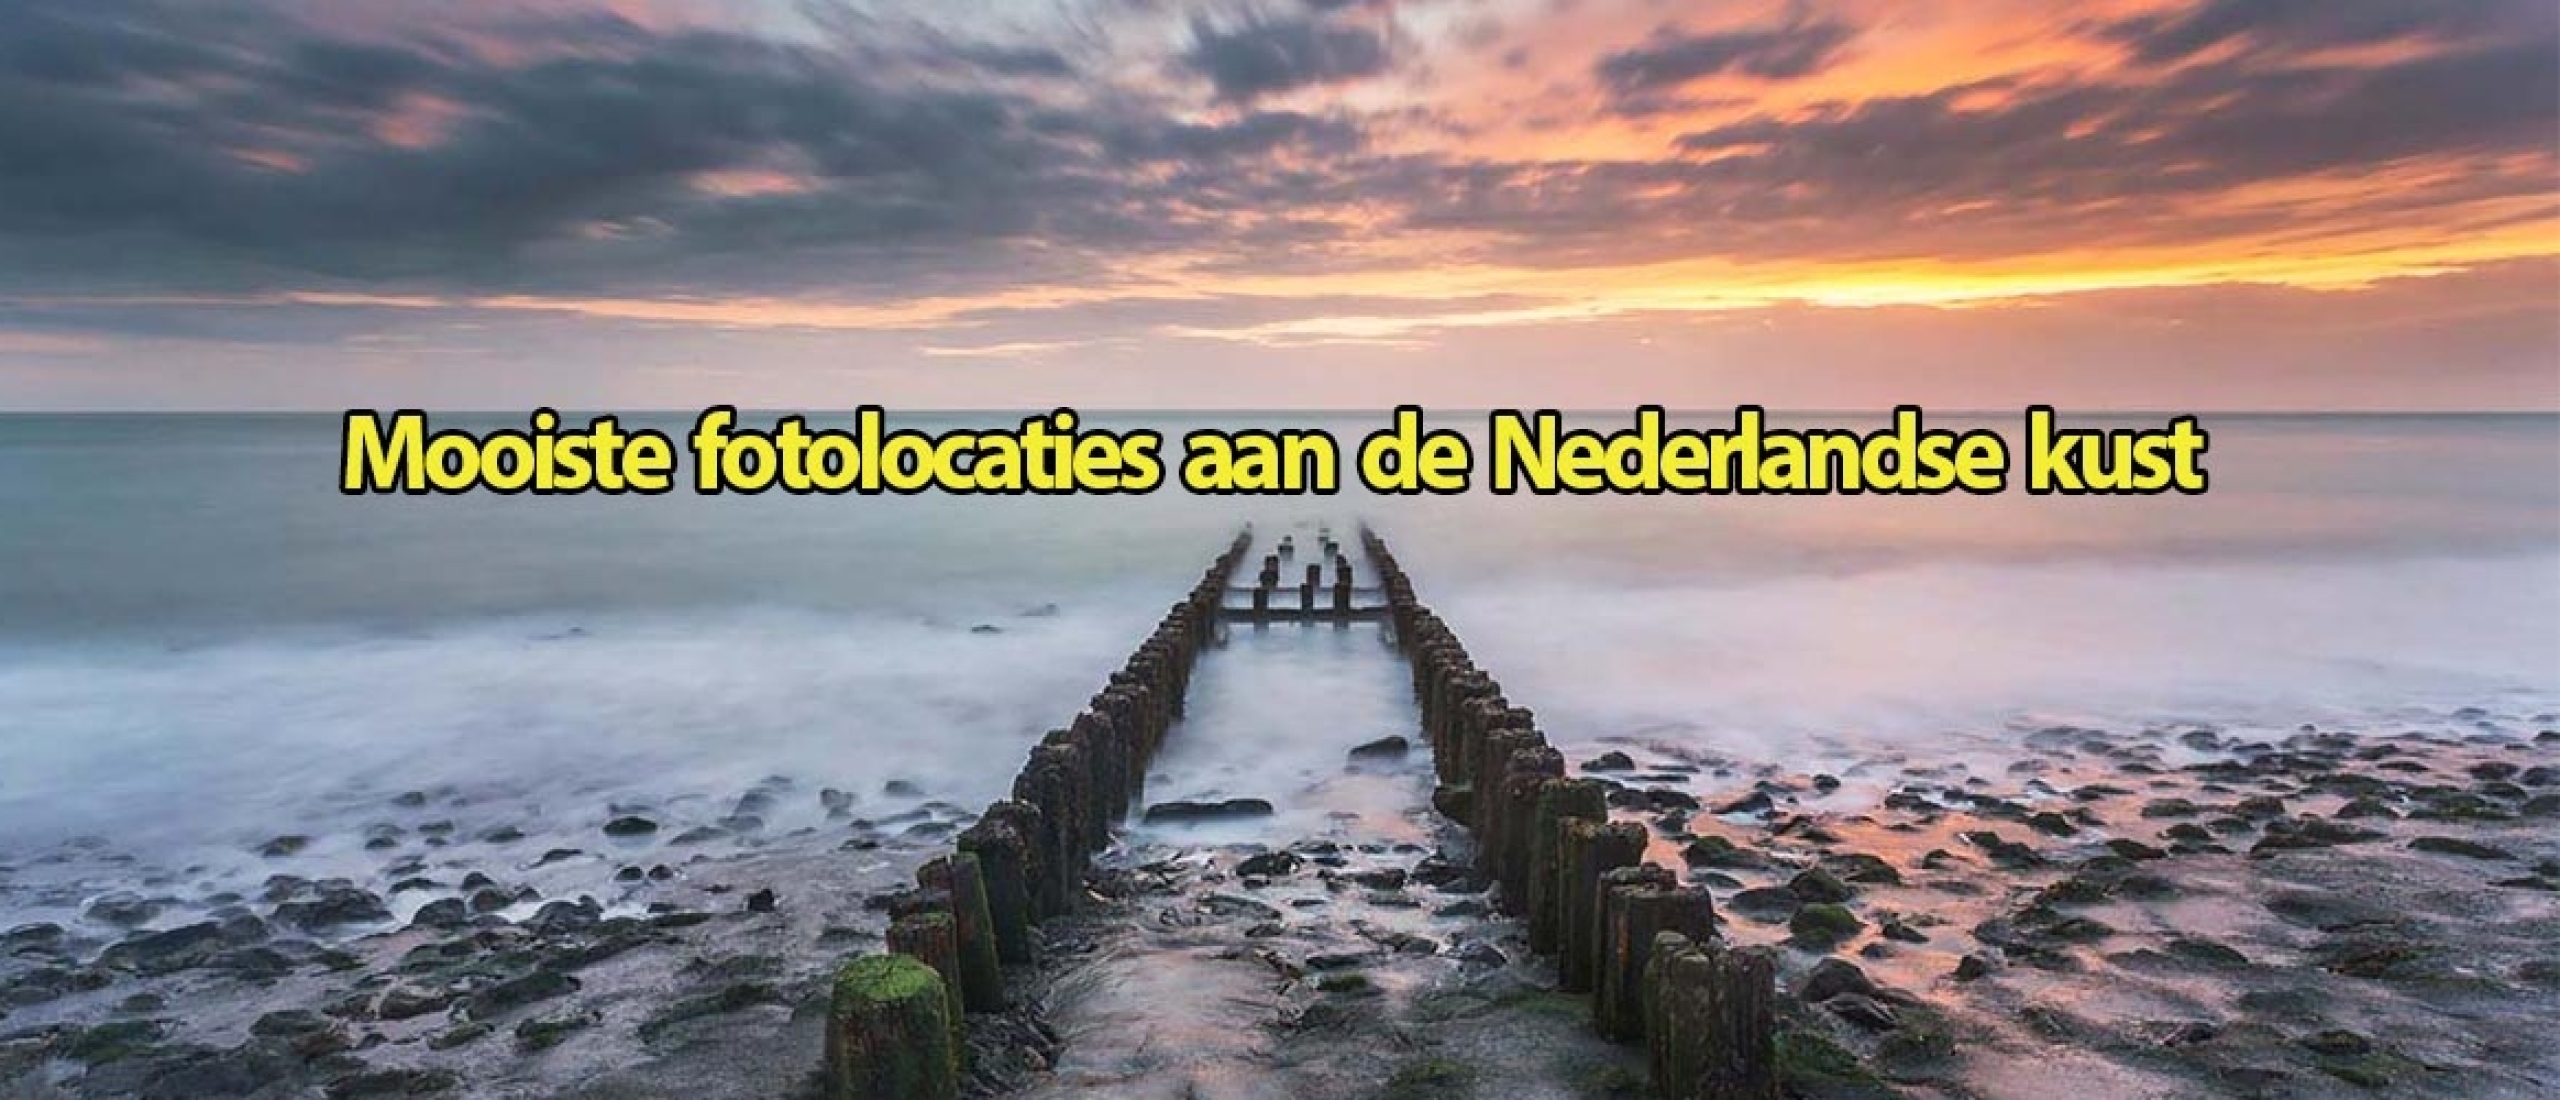 Mooiste fotolocaties aan de Nederlandse kust